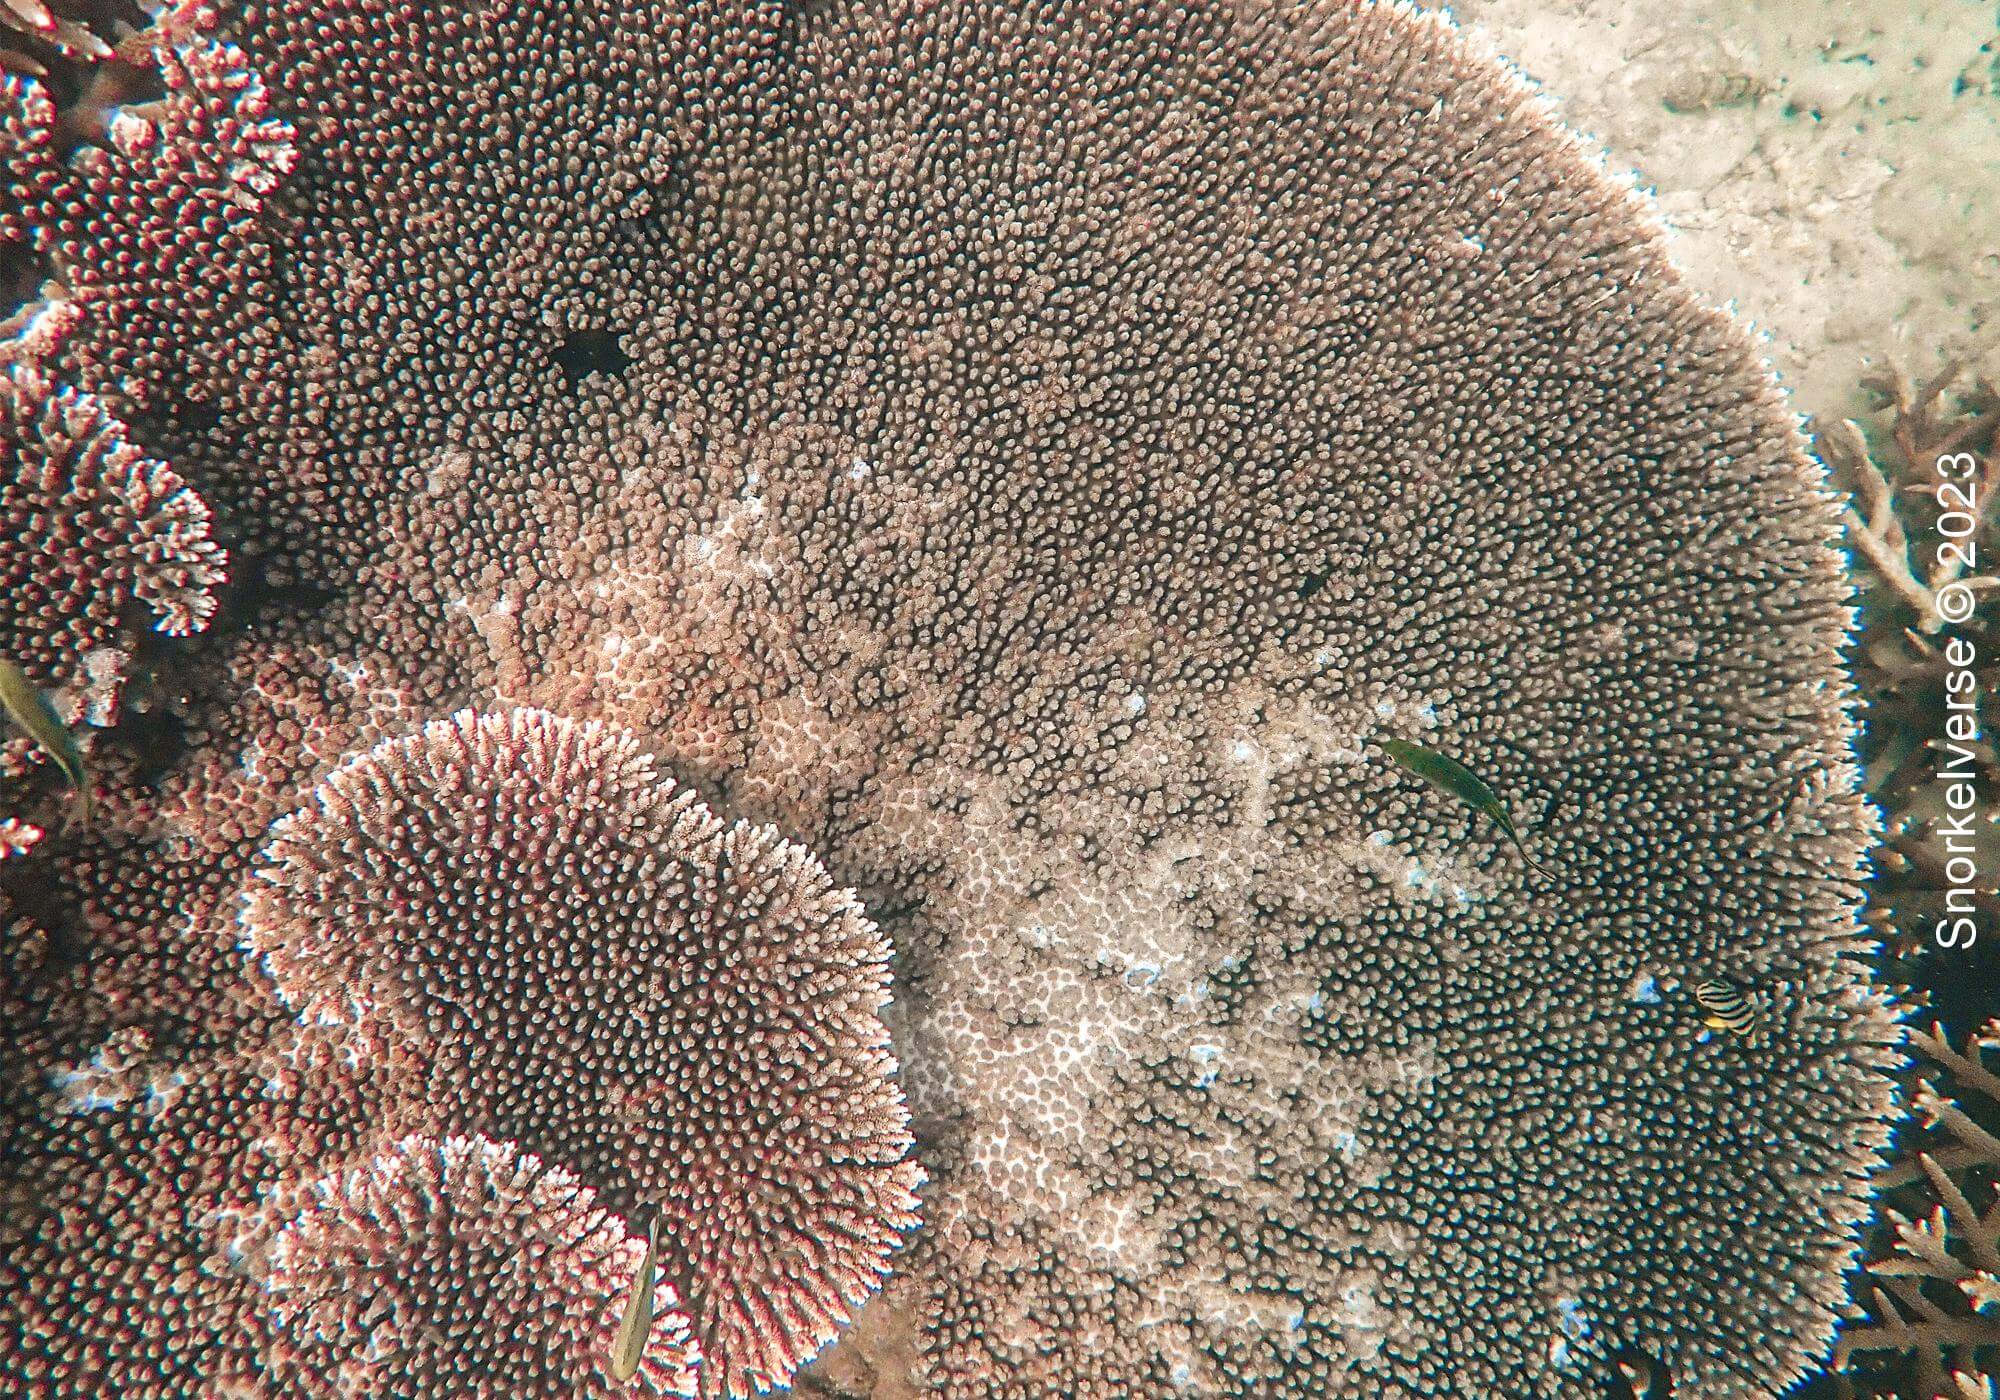 Layered Table Coral at Khai Nai